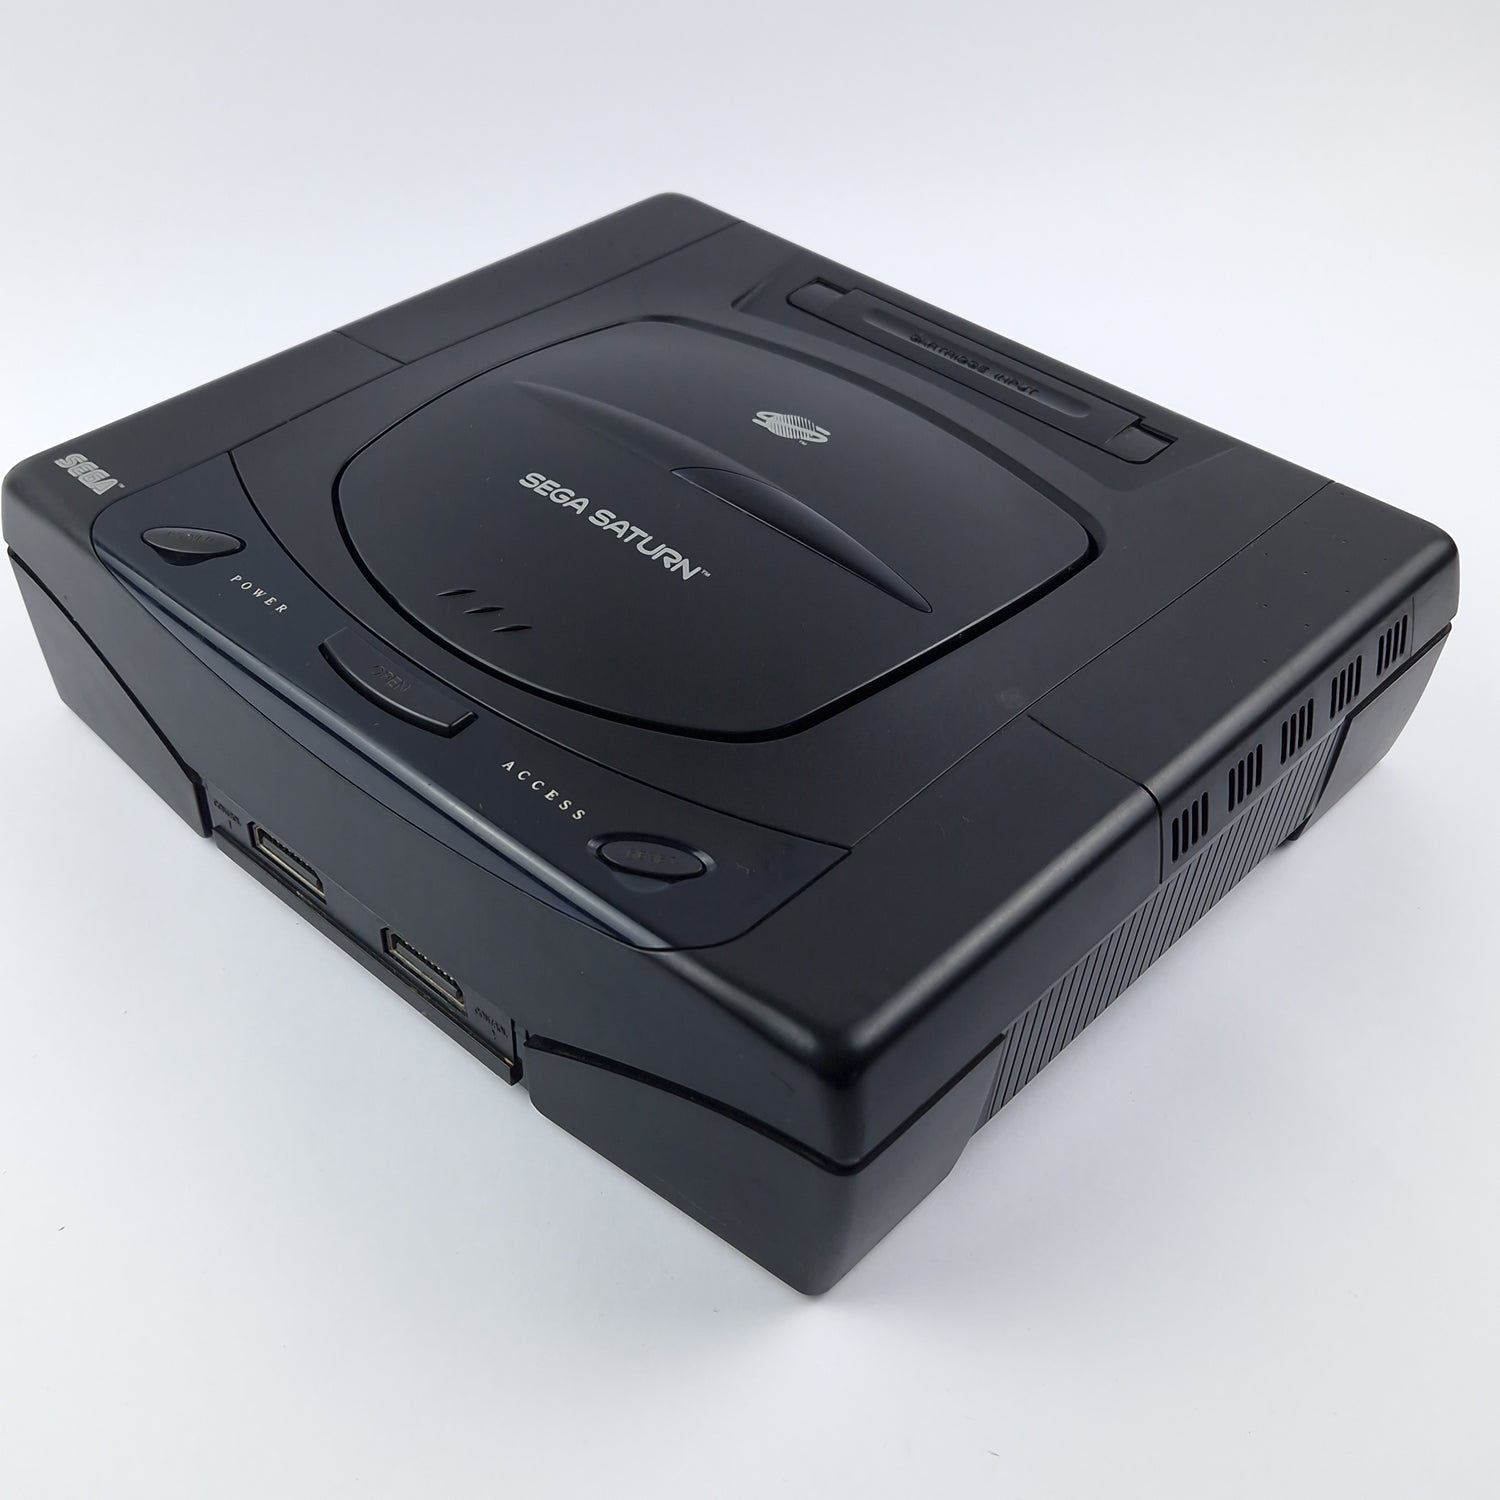 Sega Saturn Konsole mit 1 Controller und Kabel | PAL Console Schwarz